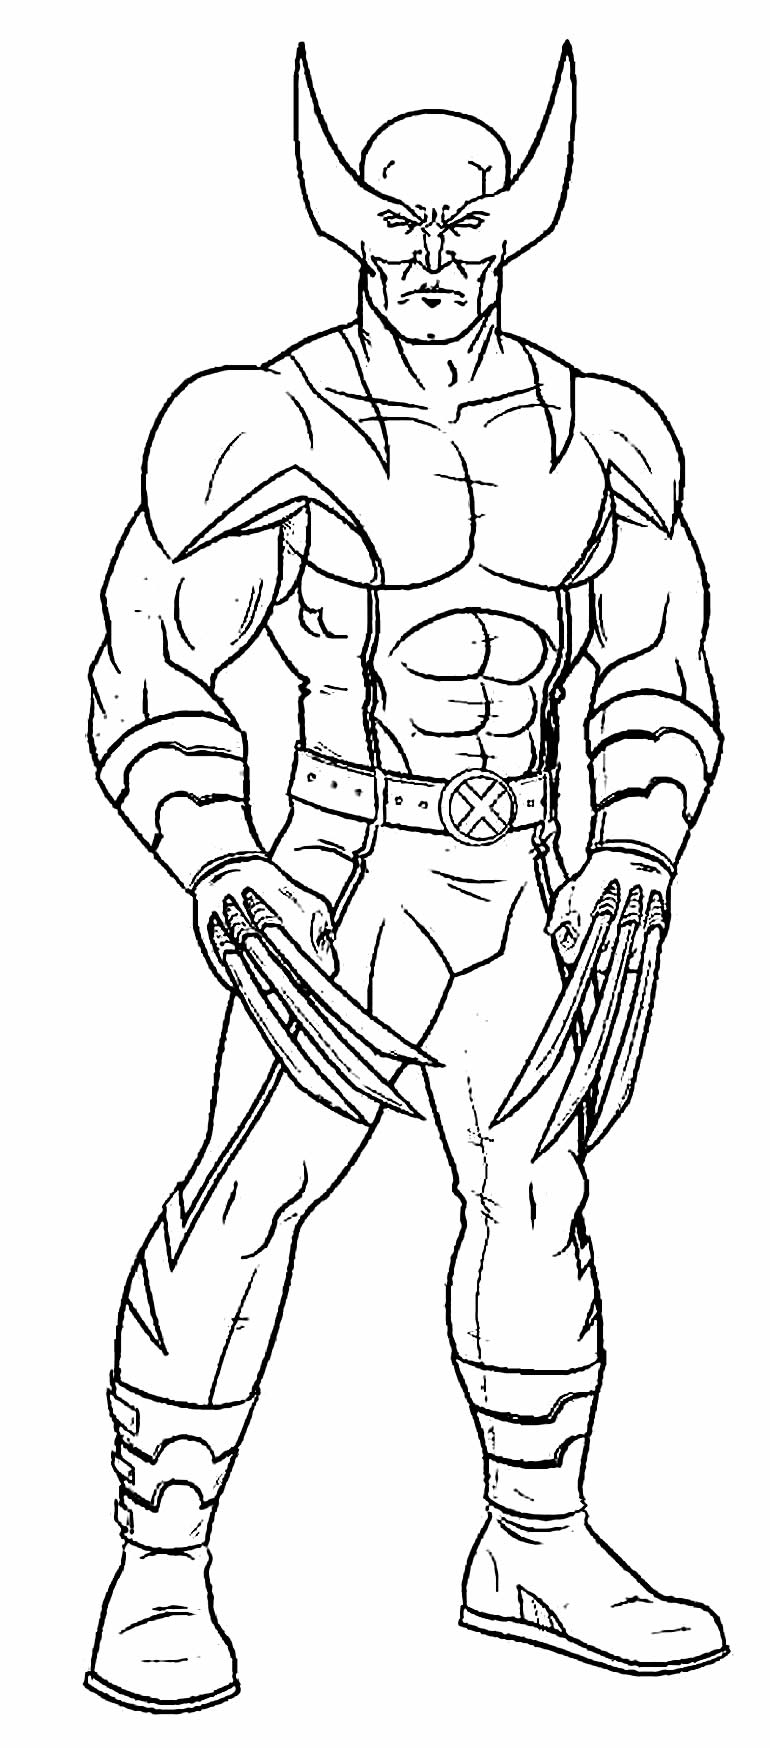 Imagem do Wolverine para colorir